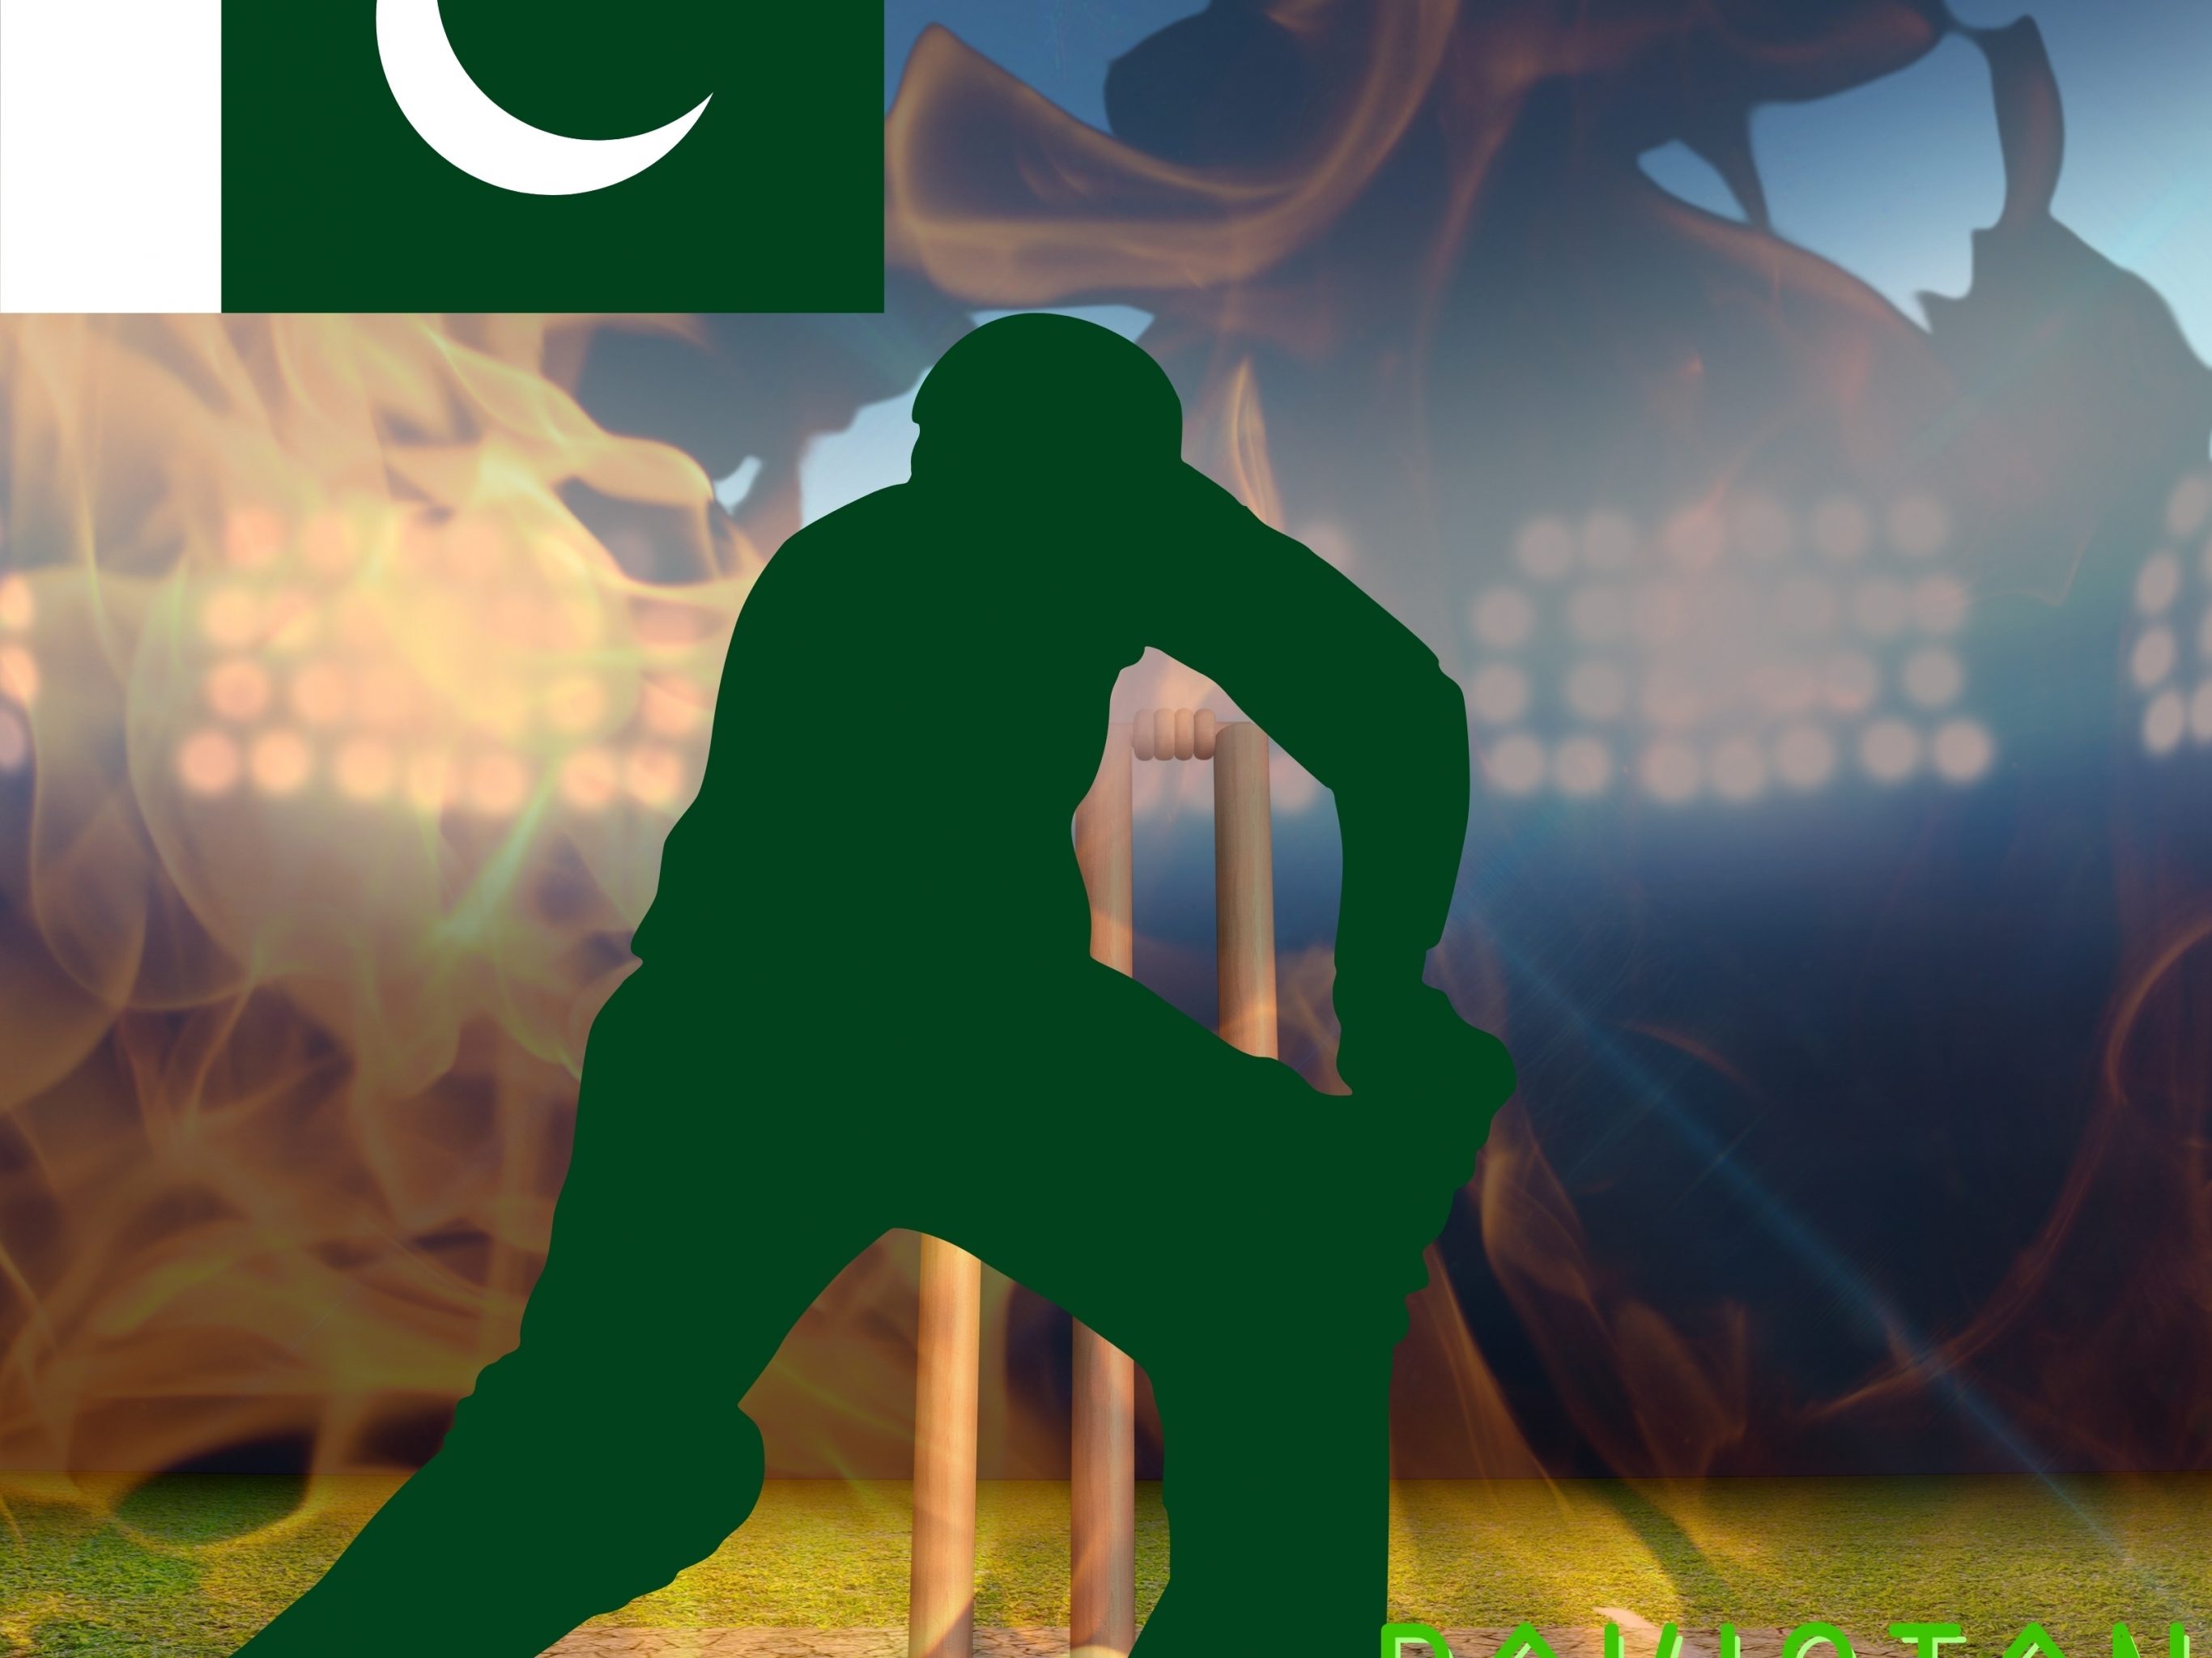 2732x2048 iPad air iPad Pro wallpapers Pakistan Cricket Stadium iPad Wallpaper 2732x2048 pixels resolution